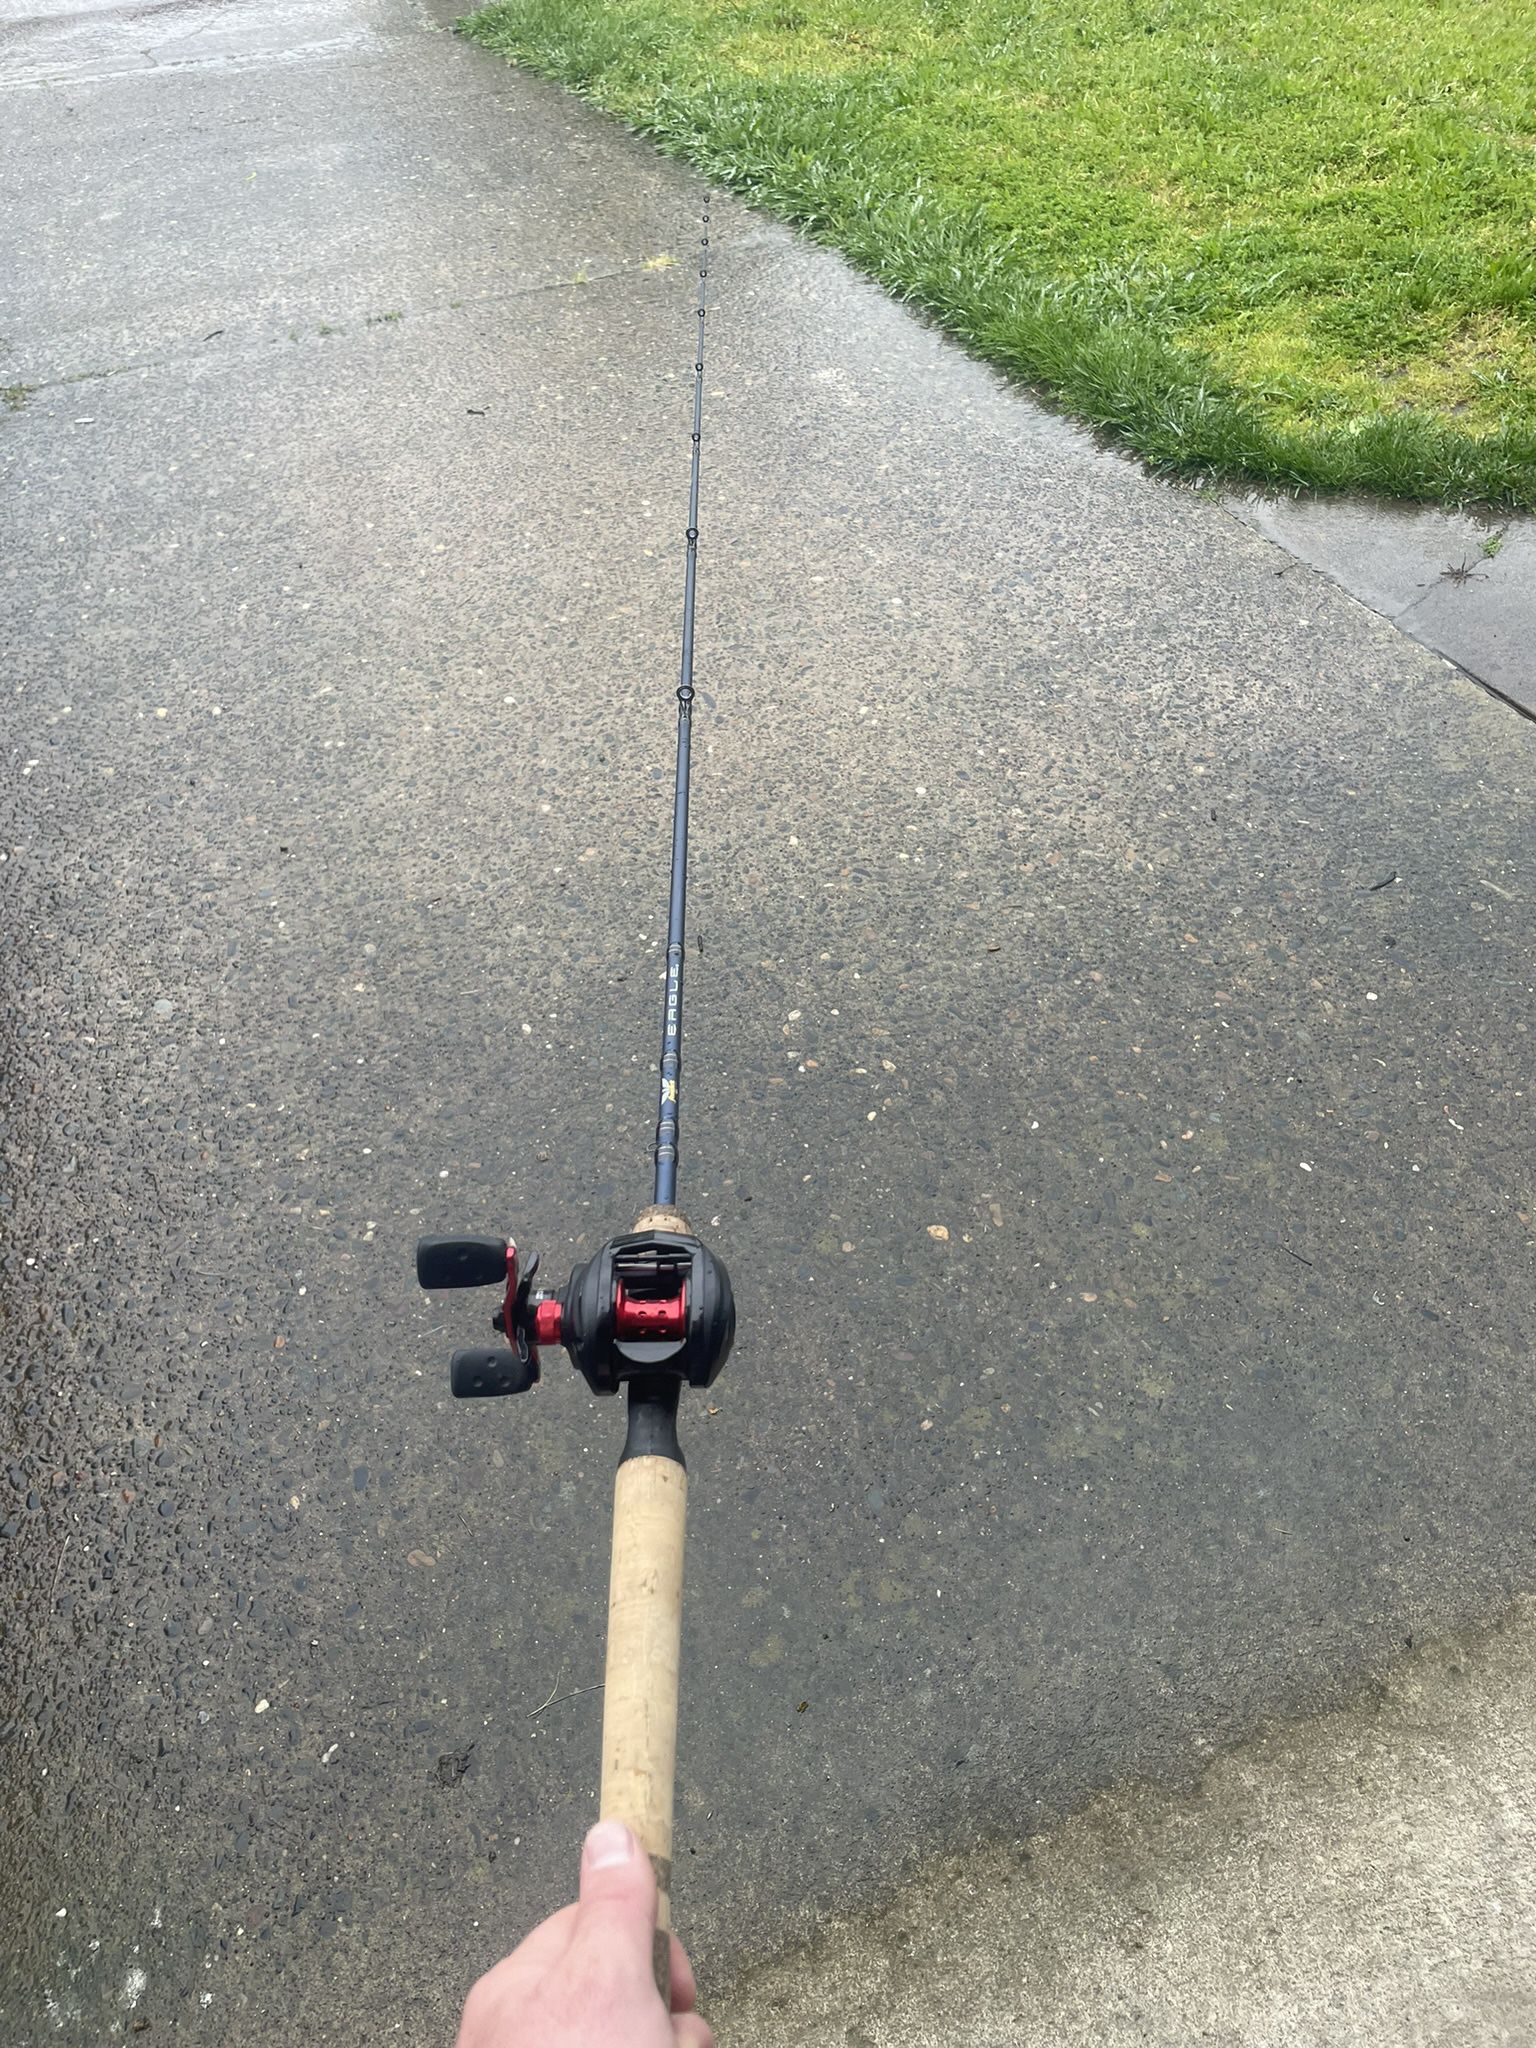 Fishing Rod 